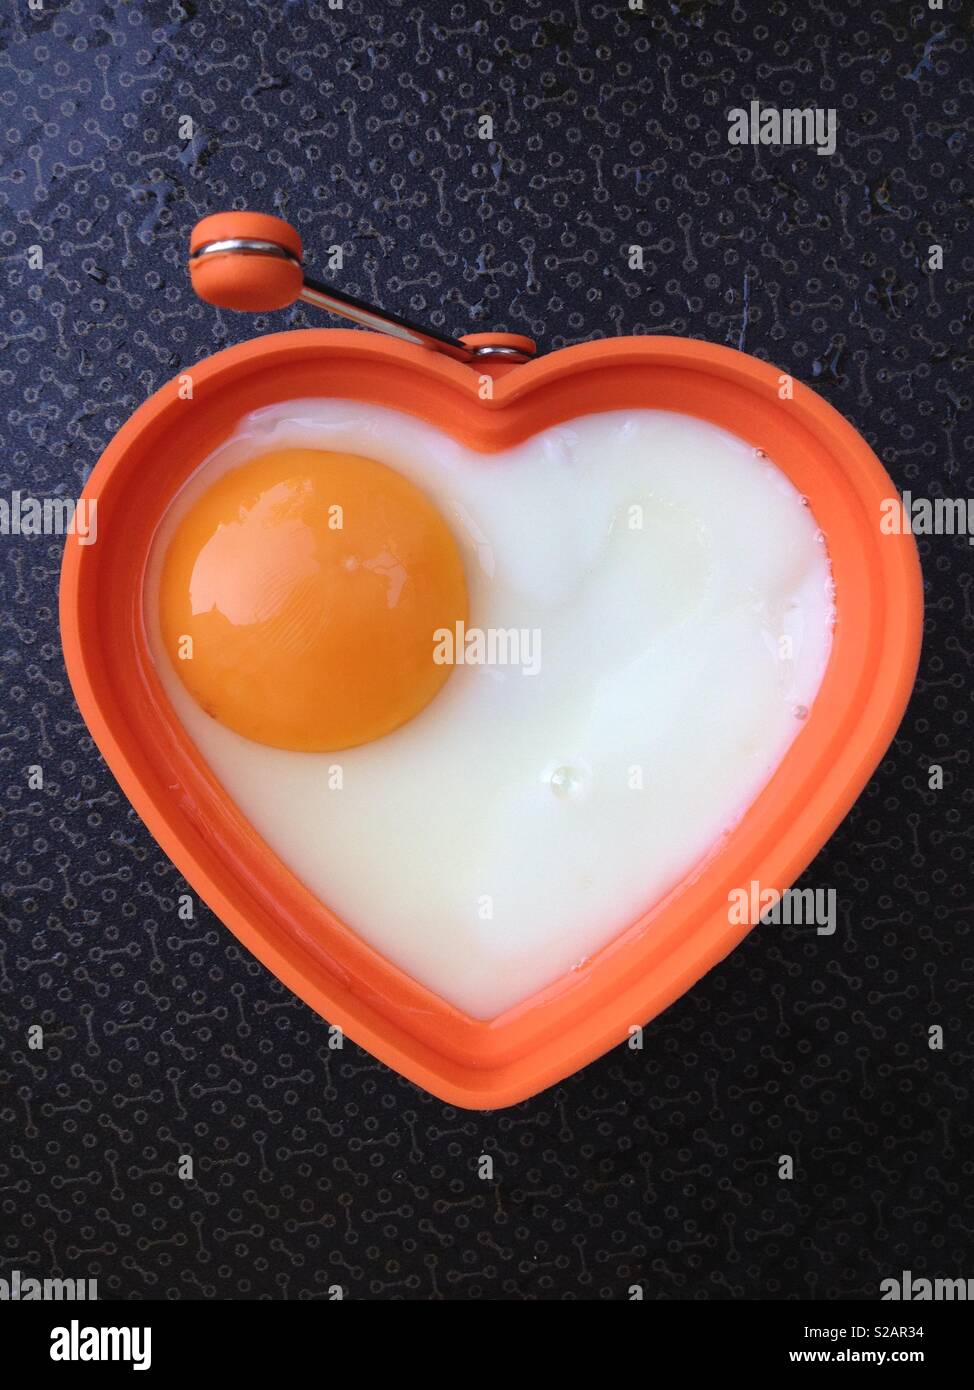 Huevo frito está frito / freír en una sartén. Los huevos se encuentra en la forma de un corazón saludable implica una dieta saludable y un buen bienestar. Foto de stock